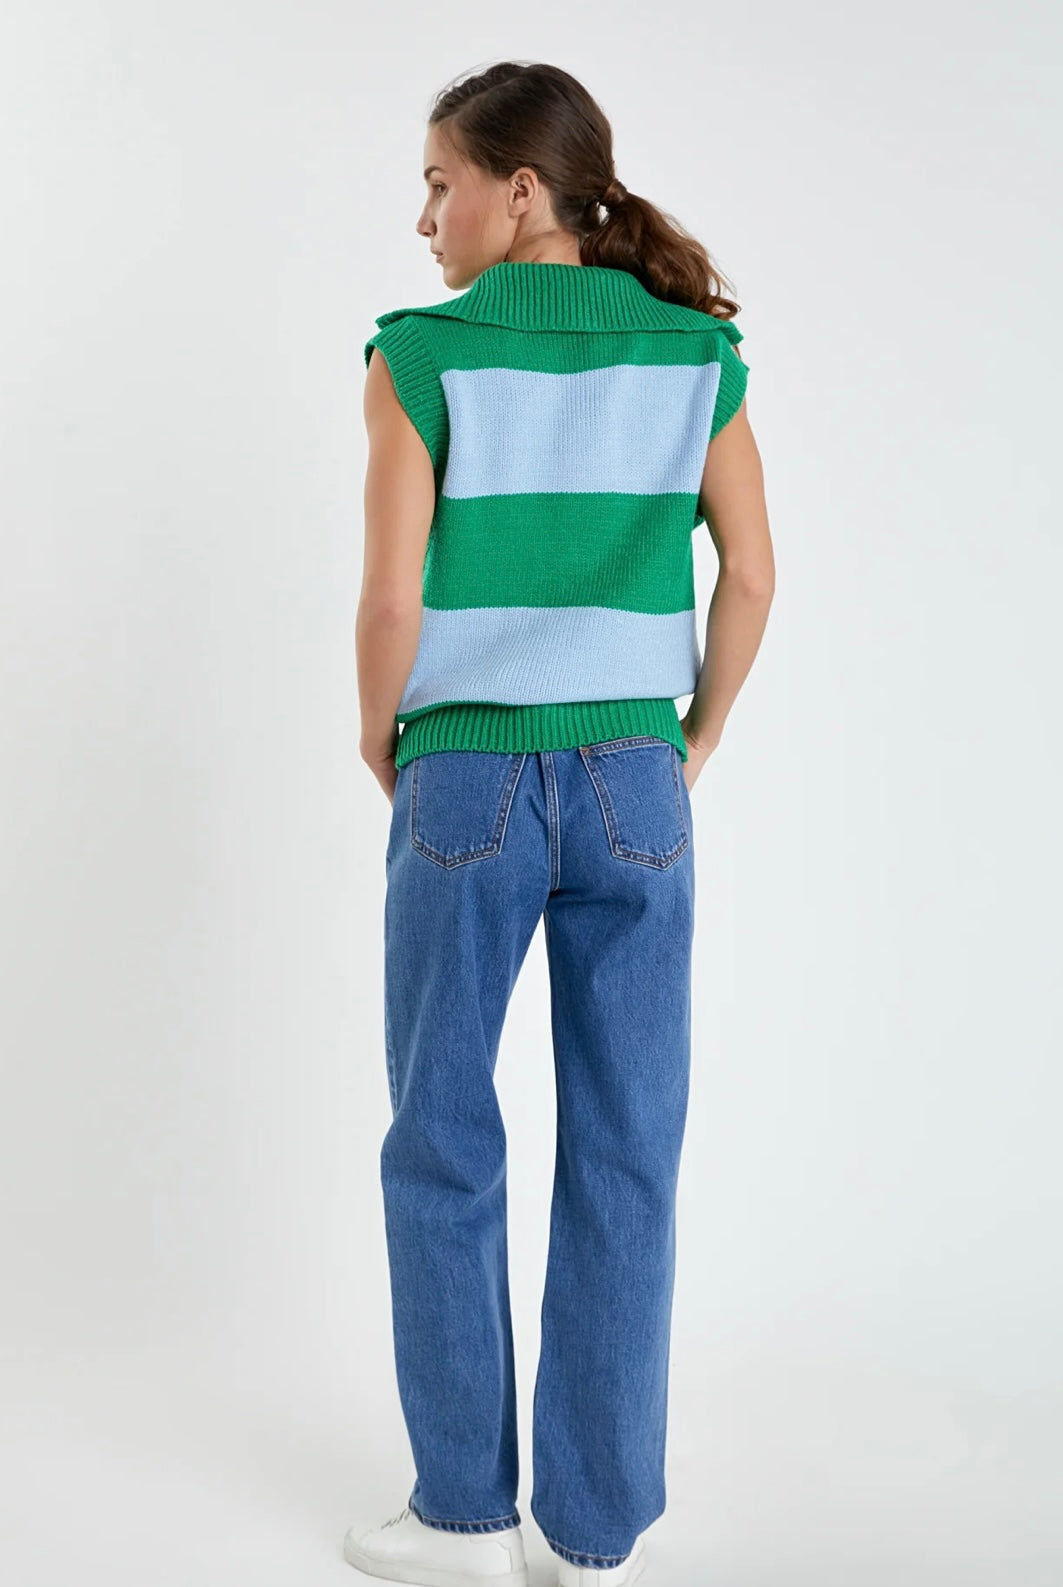 Blue/Green Stripe Sweater Vest